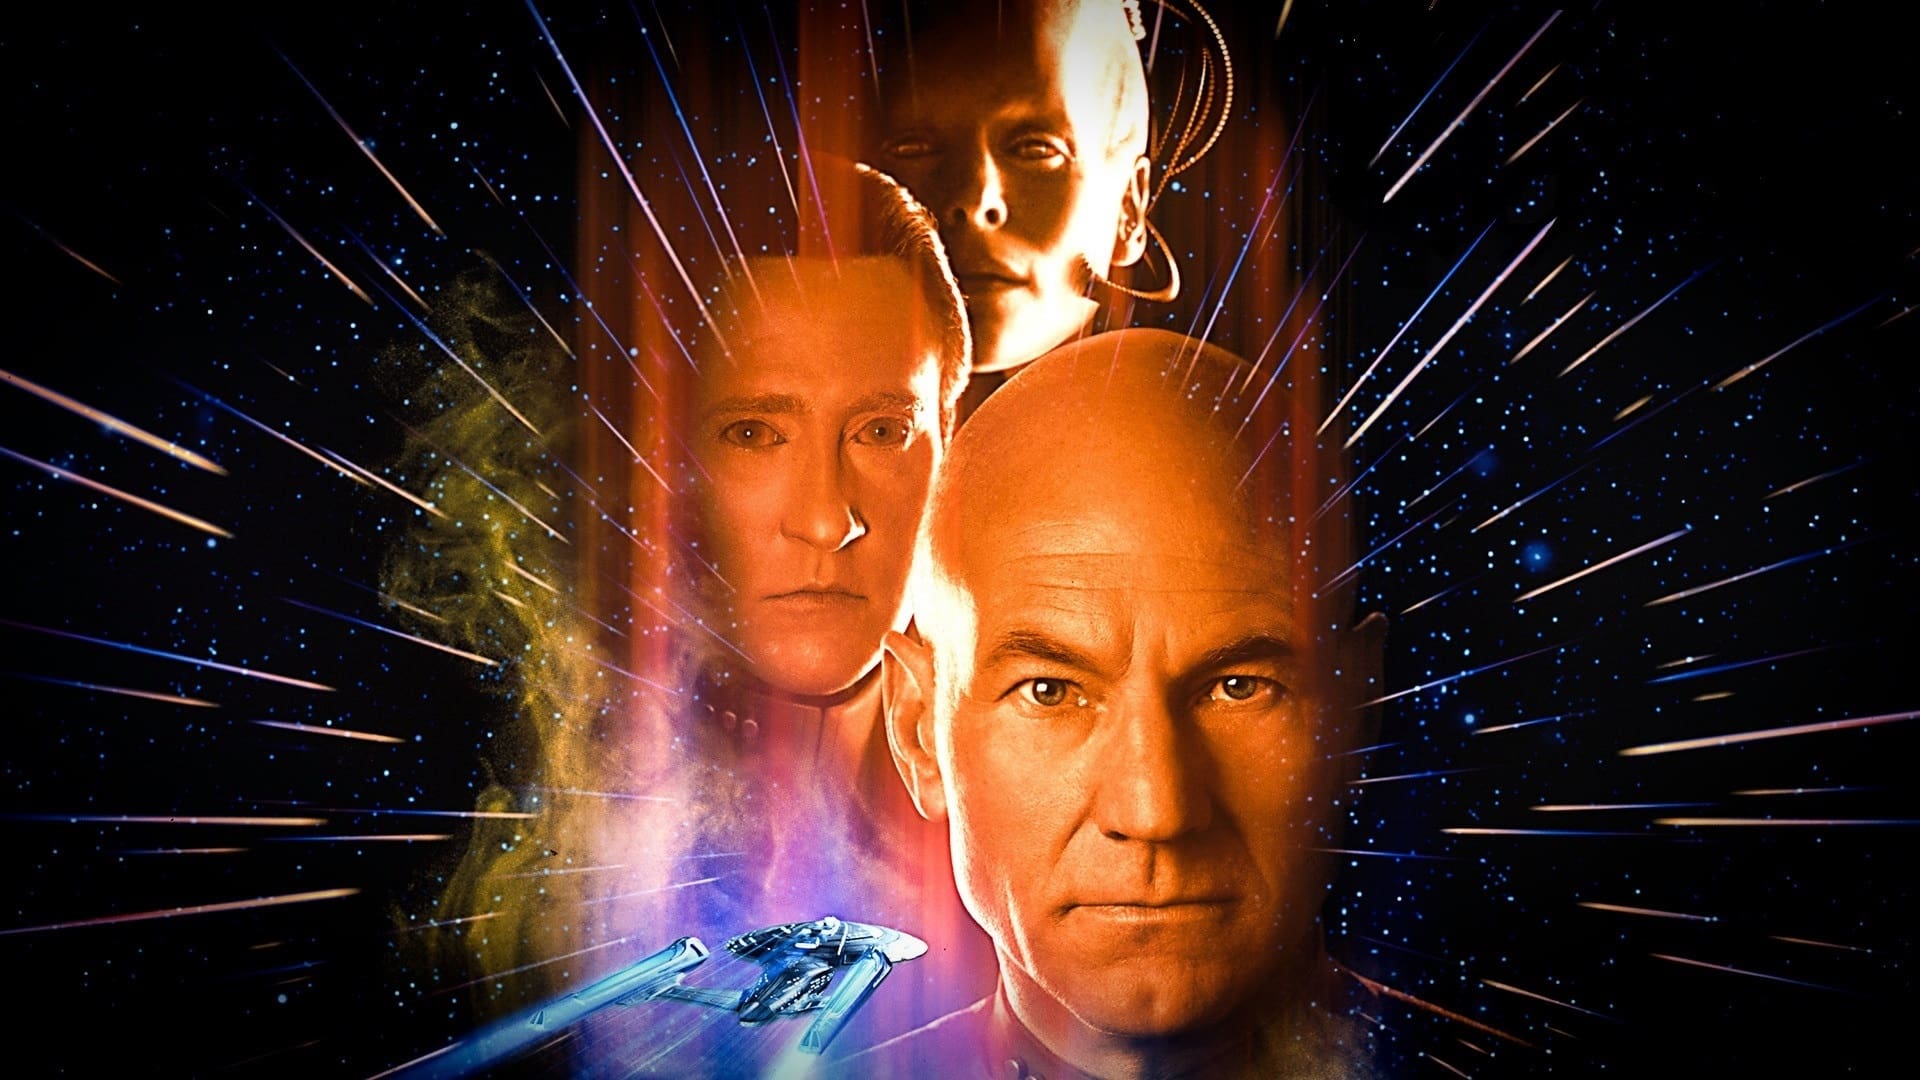 Poster Phim Star Trek: Lần Đầu Gặp Mặt (Star Trek: First Contact)